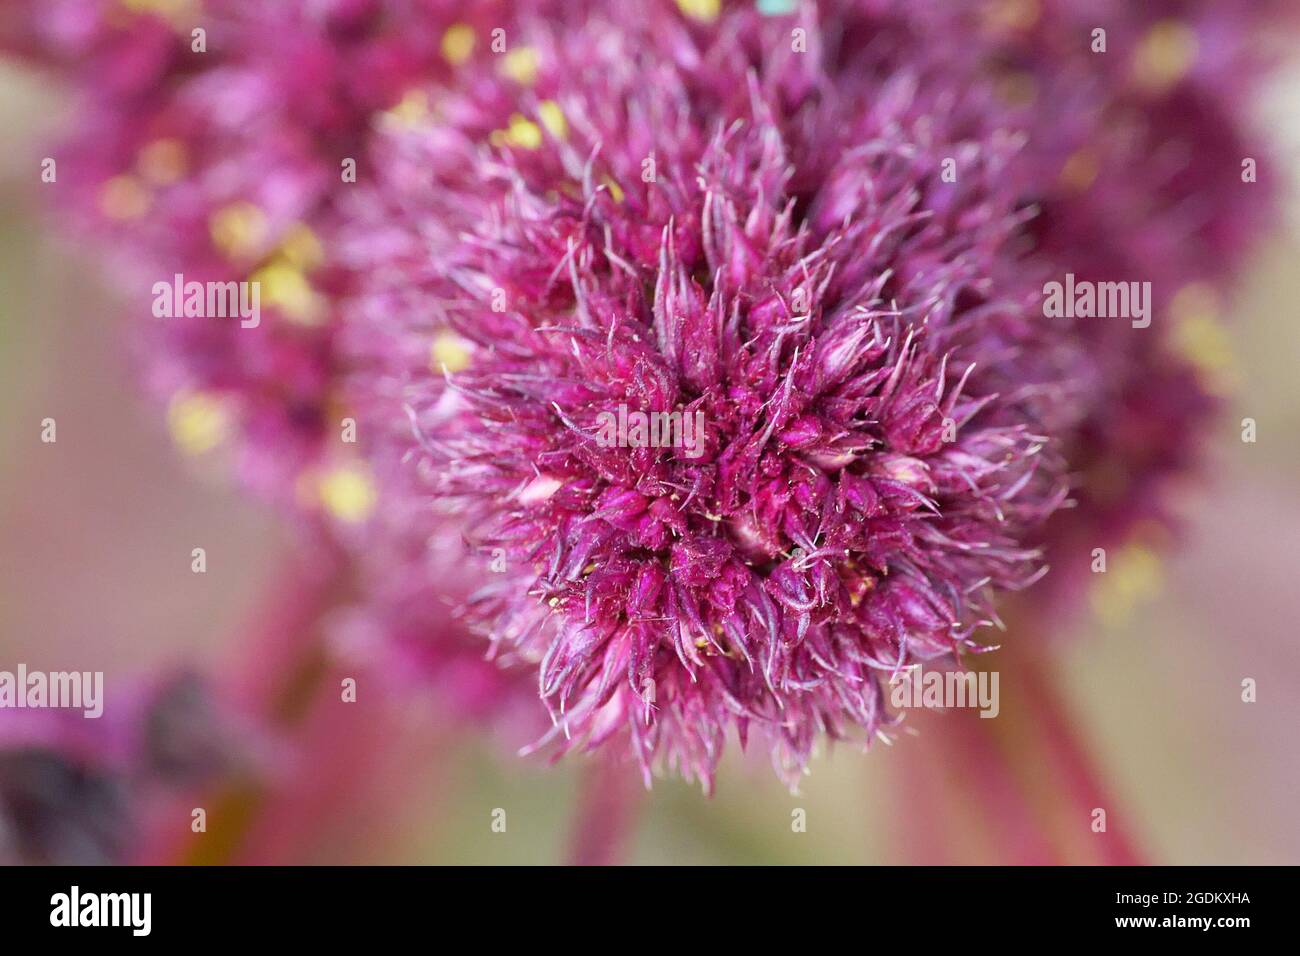 Infiorescenza di amaranto pianta, full frame. Immagine macro di fiori di amaranto di cremisi. Foto Stock